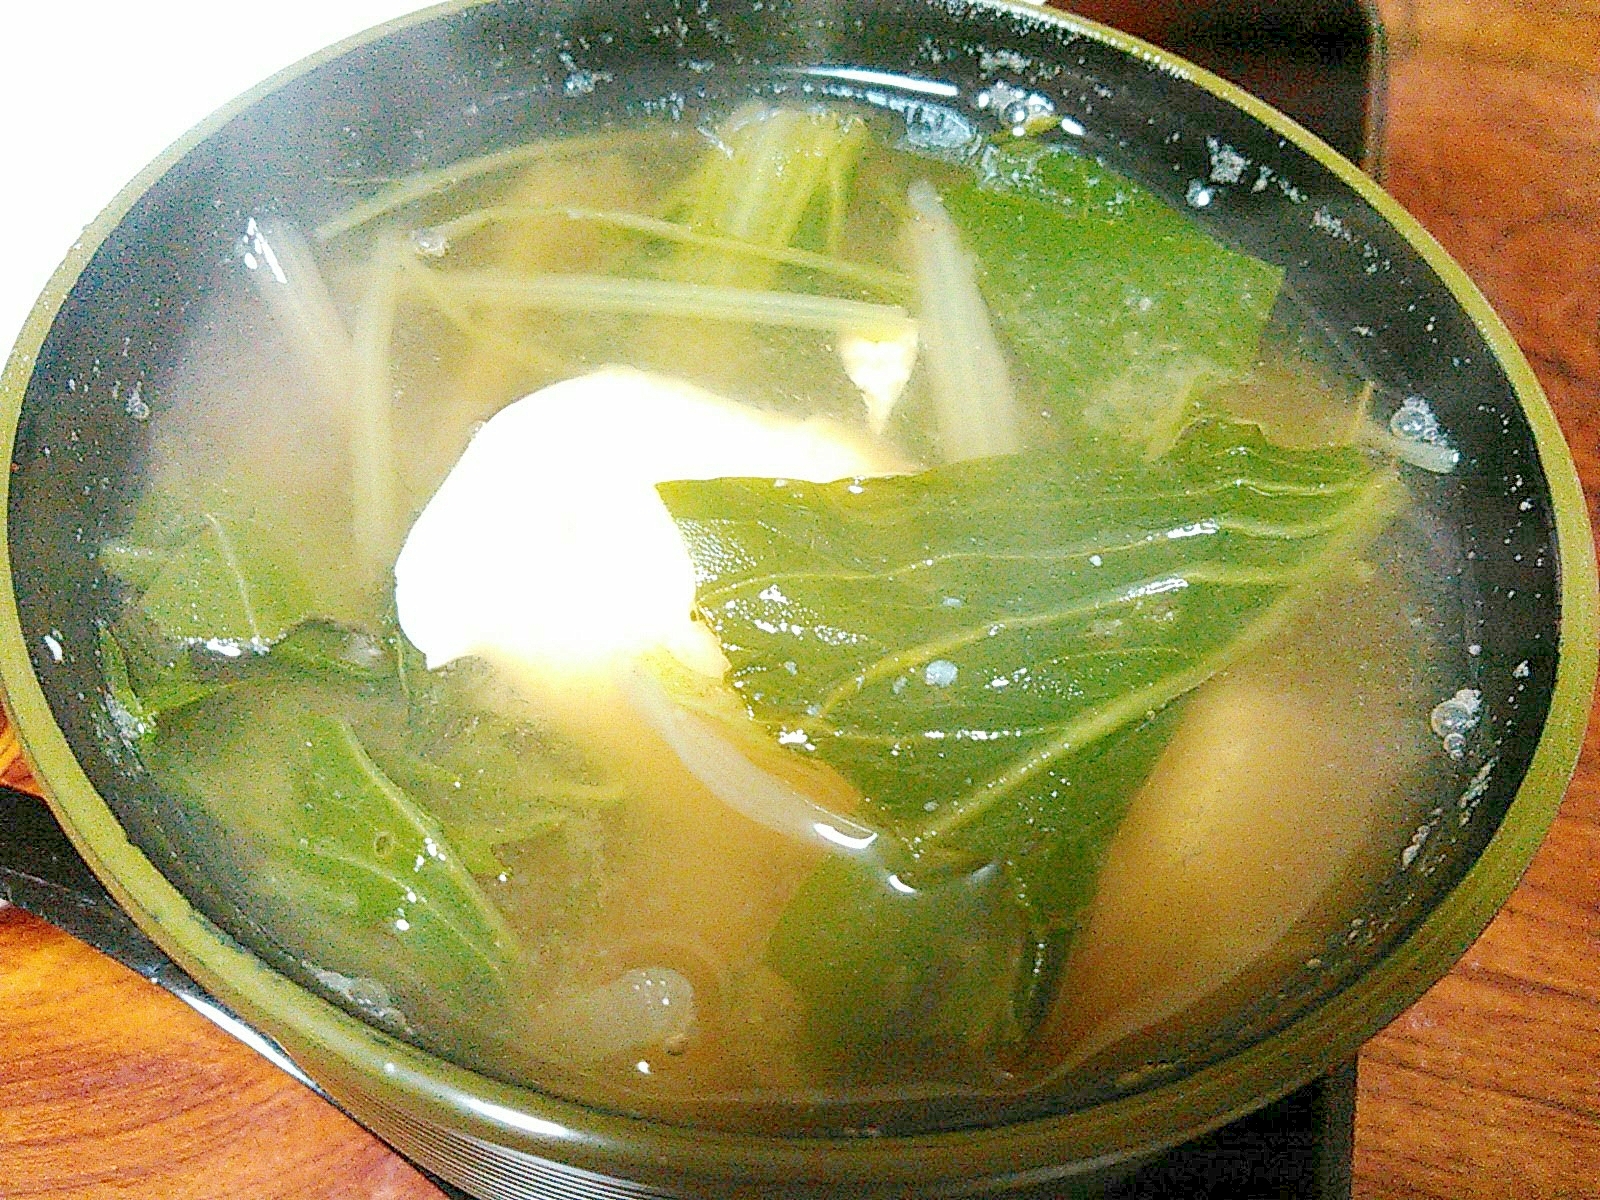 豆腐&青梗菜&水菜の味噌汁